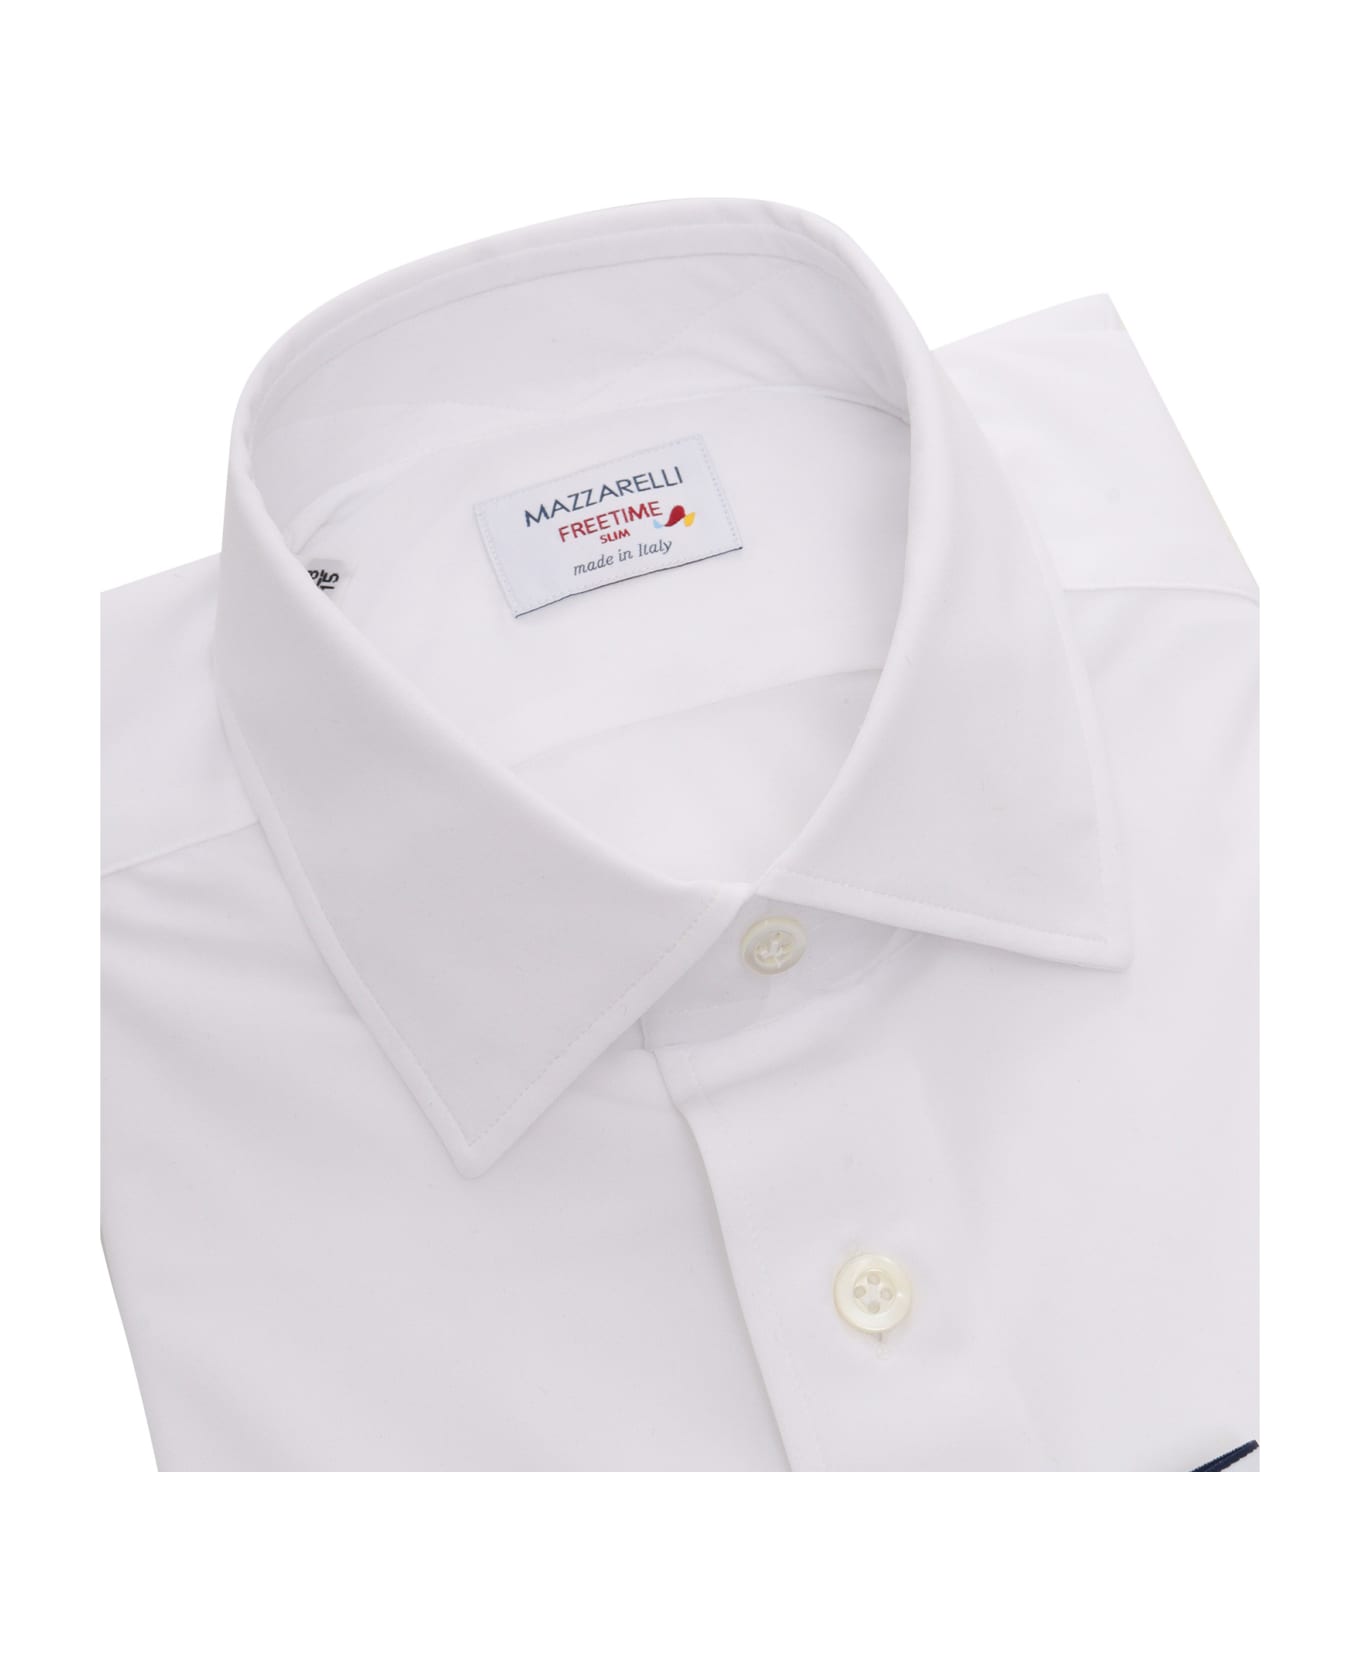 Mazzarelli White Freetime Shirt - WHITE